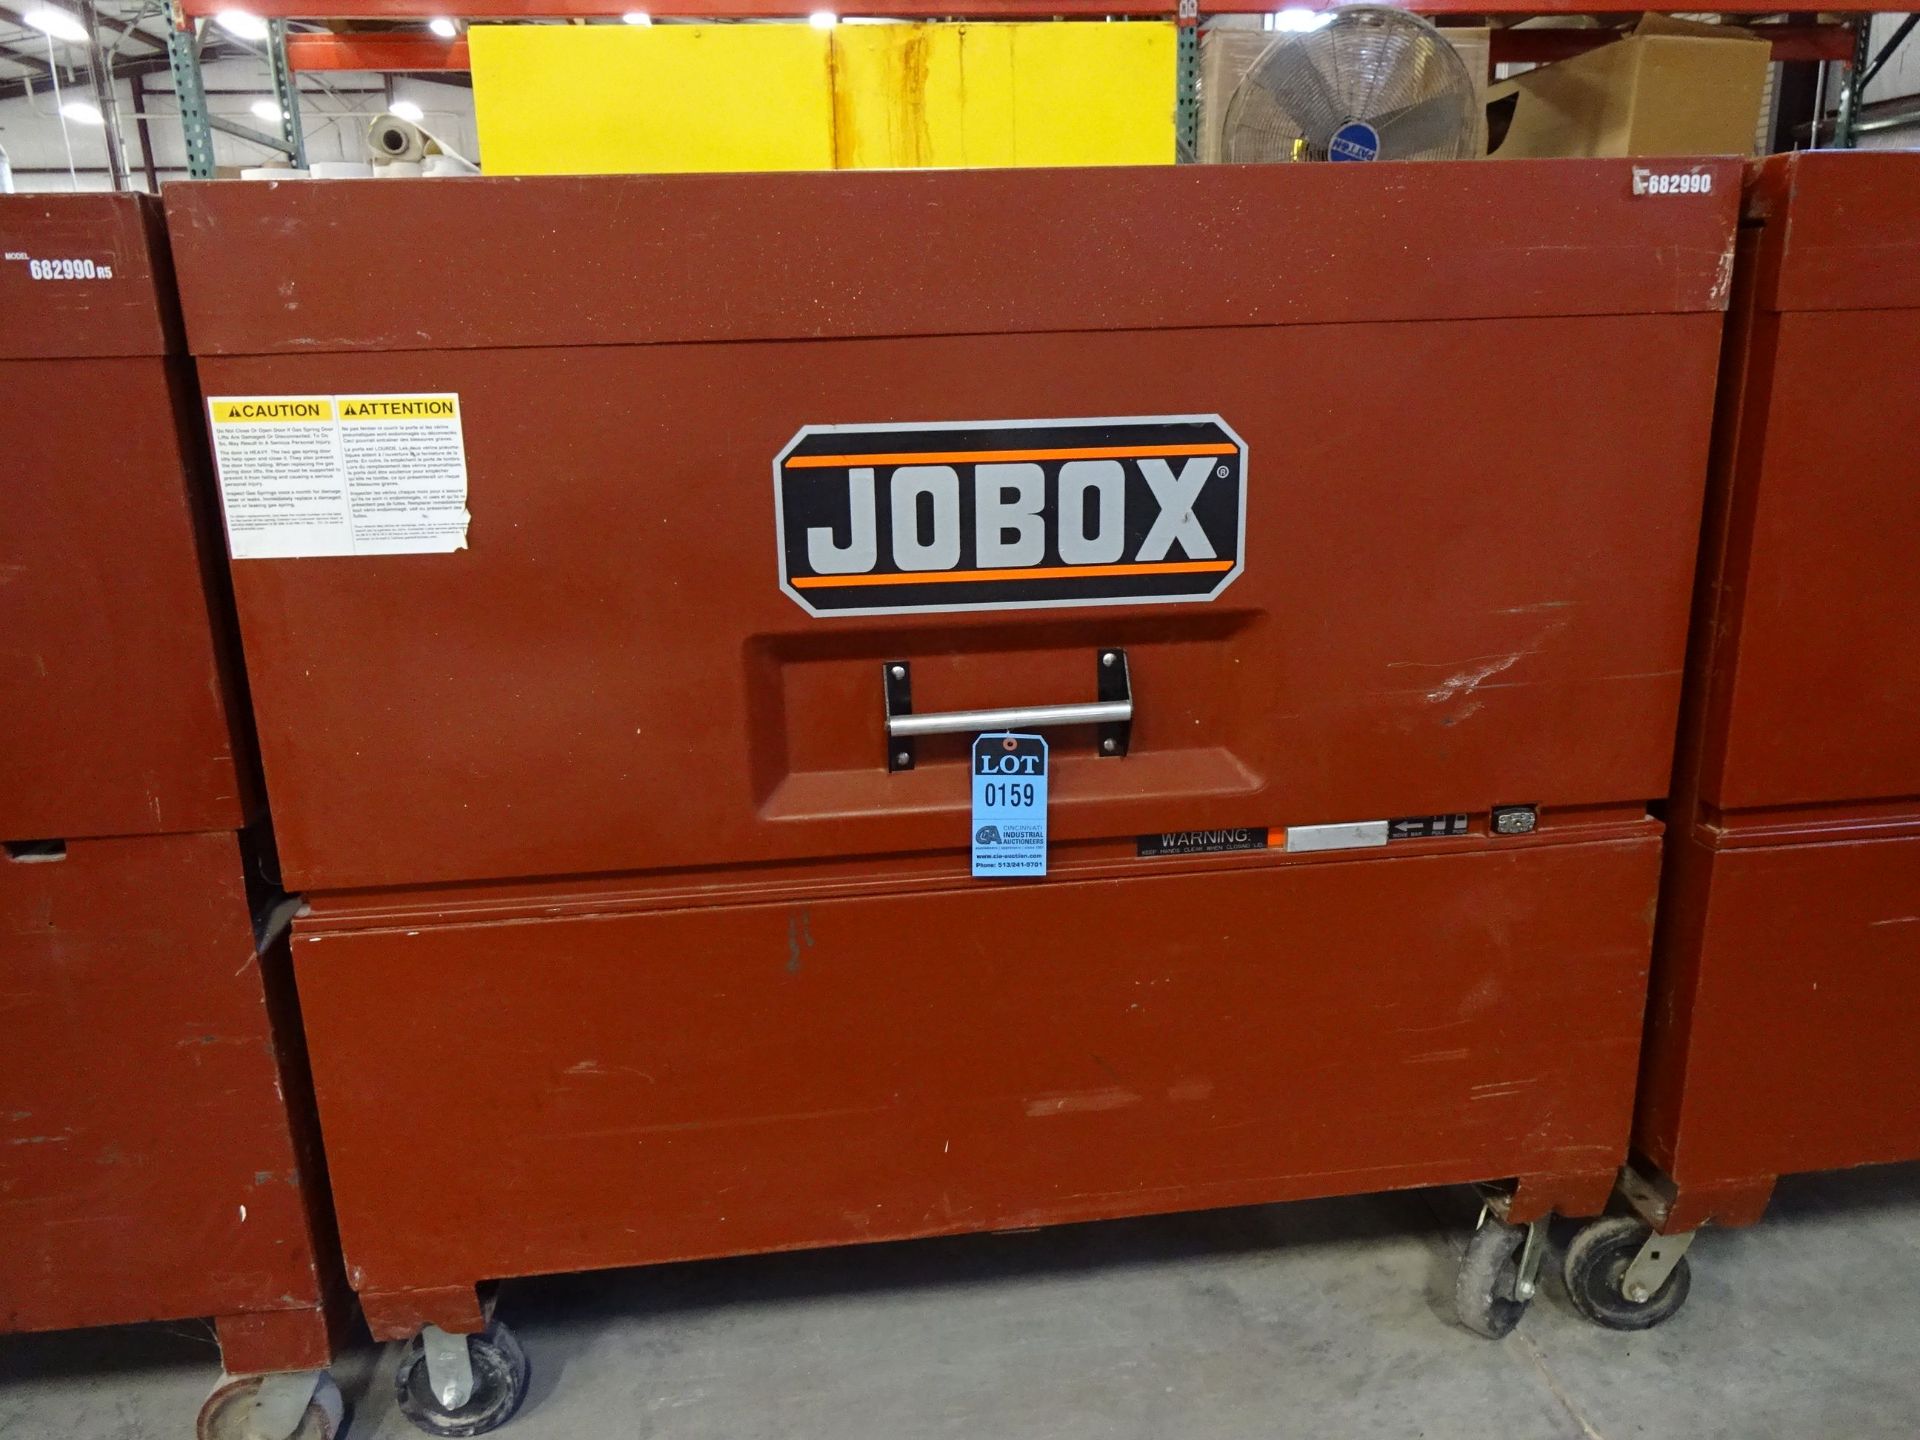 JOBOX MODEL 1-682990 PORTABLE JOB SITE GANG BOX